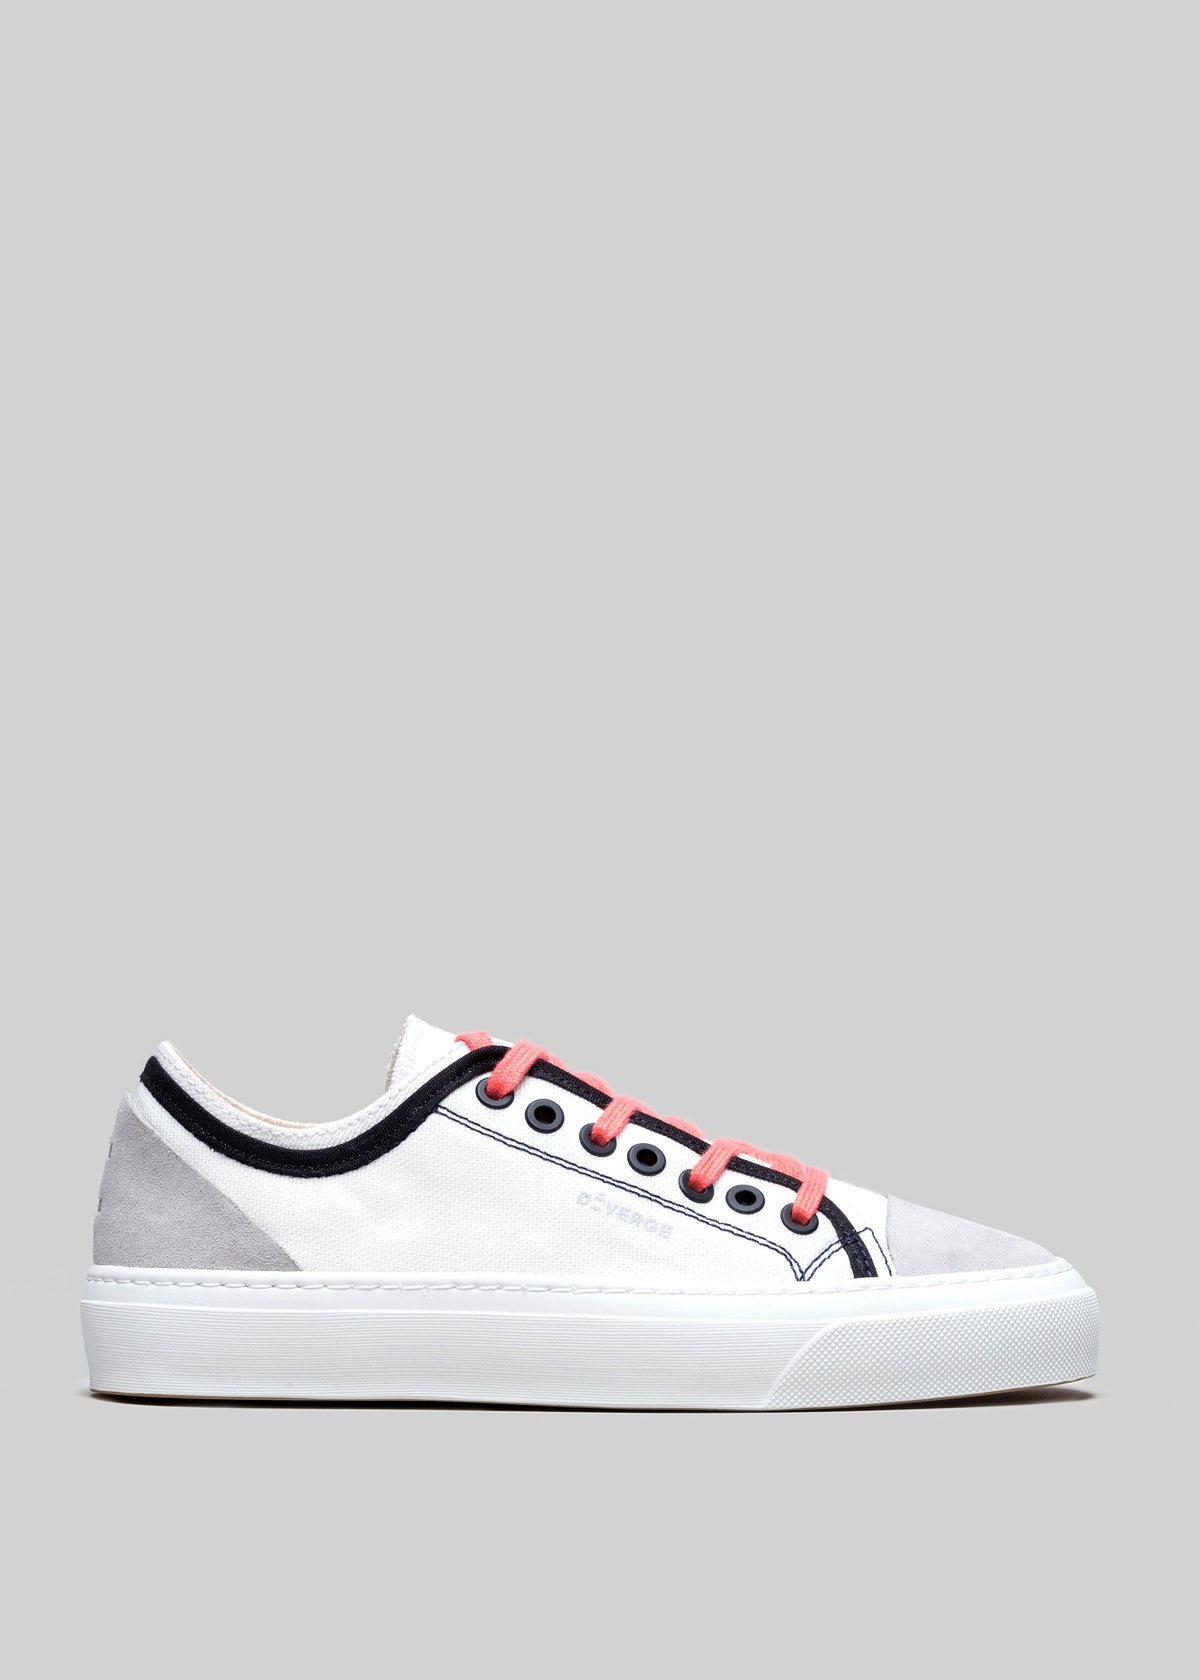 blanc et géranium premium canvas multicouche low sneakers sideview